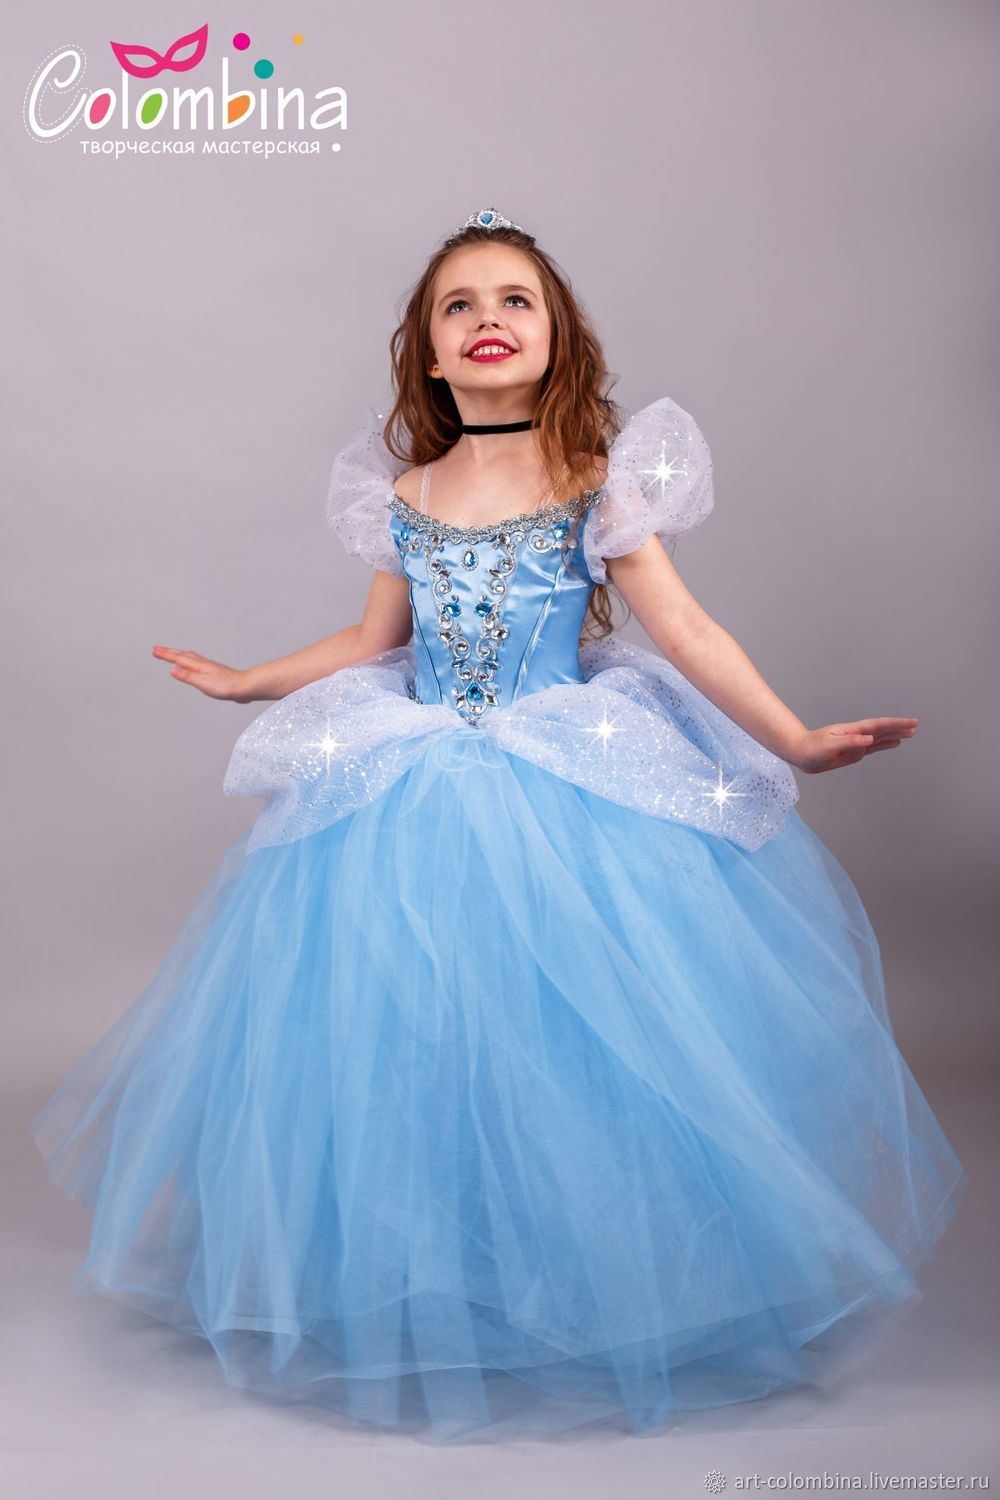 Карнавальный костюм принцессы Золушки Батик купить в интернет-магазине Wildberries